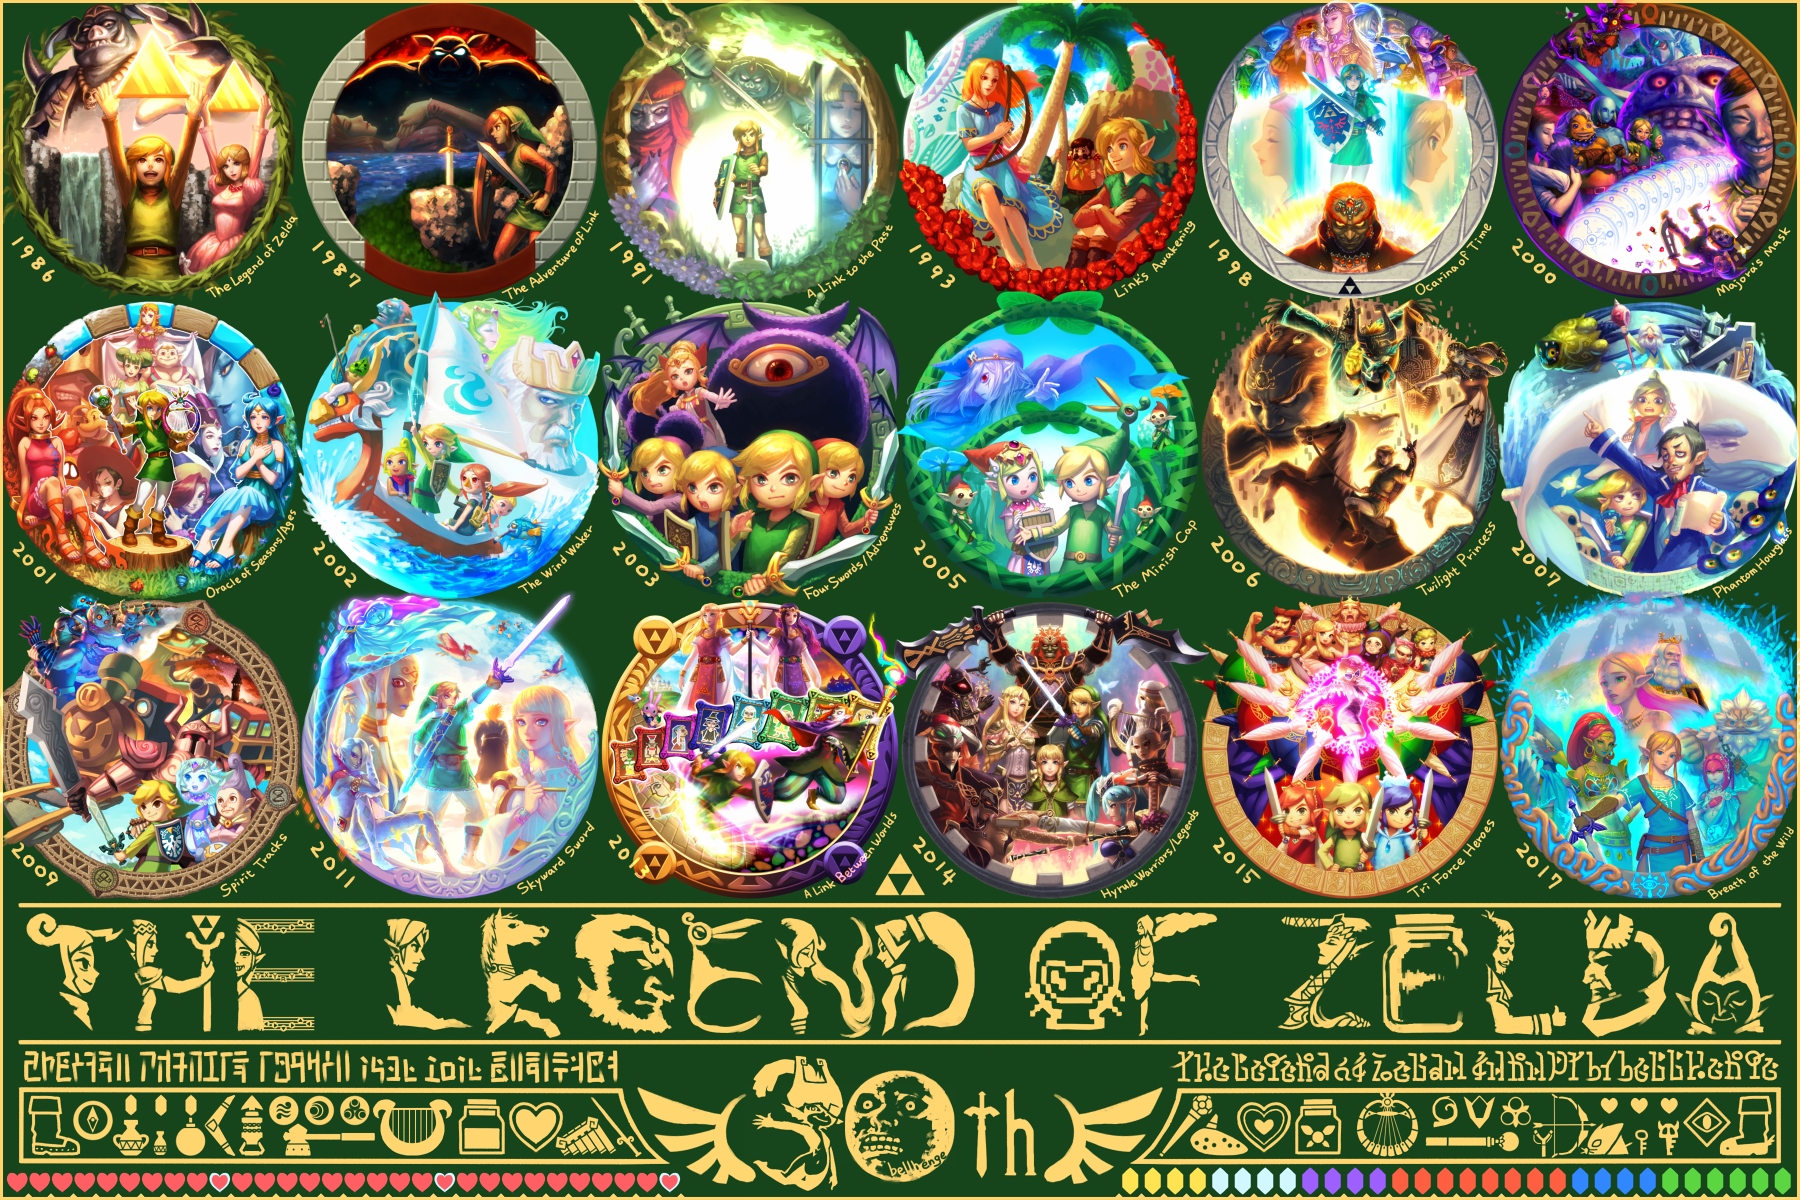 zelda, video game, the legend of zelda, hyrule warriors legends, hyrule warriors, the legend of zelda: a link between worlds, the legend of zelda: a link to the past, the legend of zelda: breath of the wild, the legend of zelda: four swords adventures, the legend of zelda: link's awakening, the legend of zelda: majora's mask, the legend of zelda: ocarina of time, the legend of zelda: oracle of ages, the legend of zelda: oracle of seasons, the legend of zelda: phantom hourglass, the legend of zelda: skyward sword, the legend of zelda: spirit tracks, the legend of zelda: the minish cap, the legend of zelda: the wind waker, the legend of zelda: tri force heroes, the legend of zelda: twilight princess, zelda ii: the adventure of link